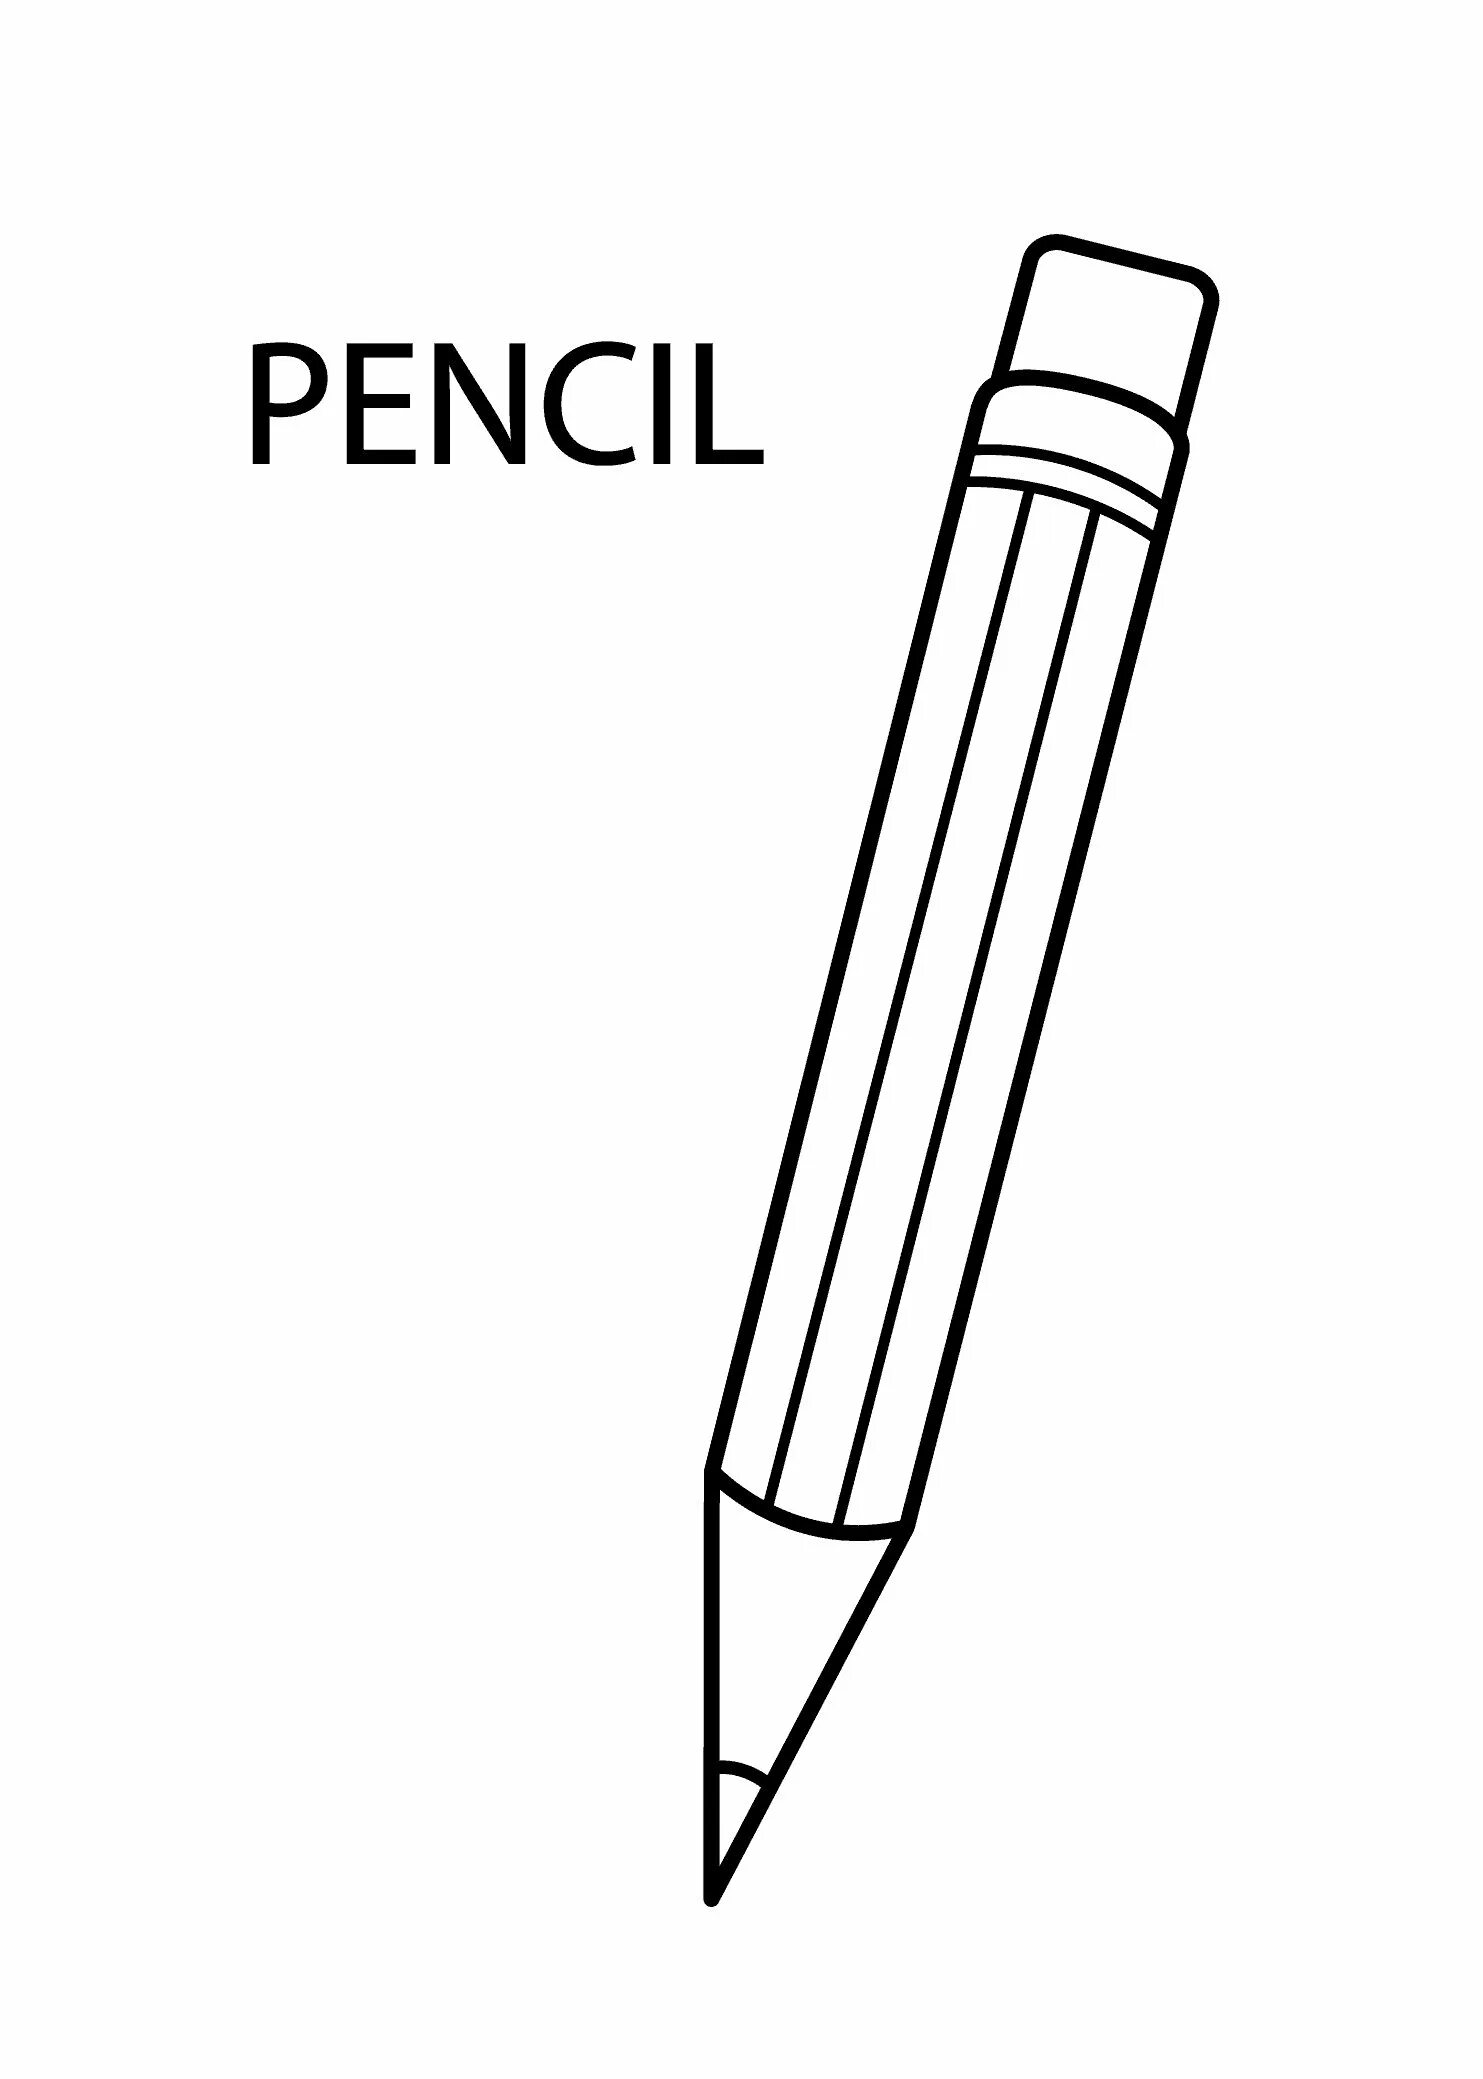 Ручка распечатать картинку. Раскраска с карандашами. Карандаш раскраска для детей. Ручка раскраска. Ручка раскраска для детей.